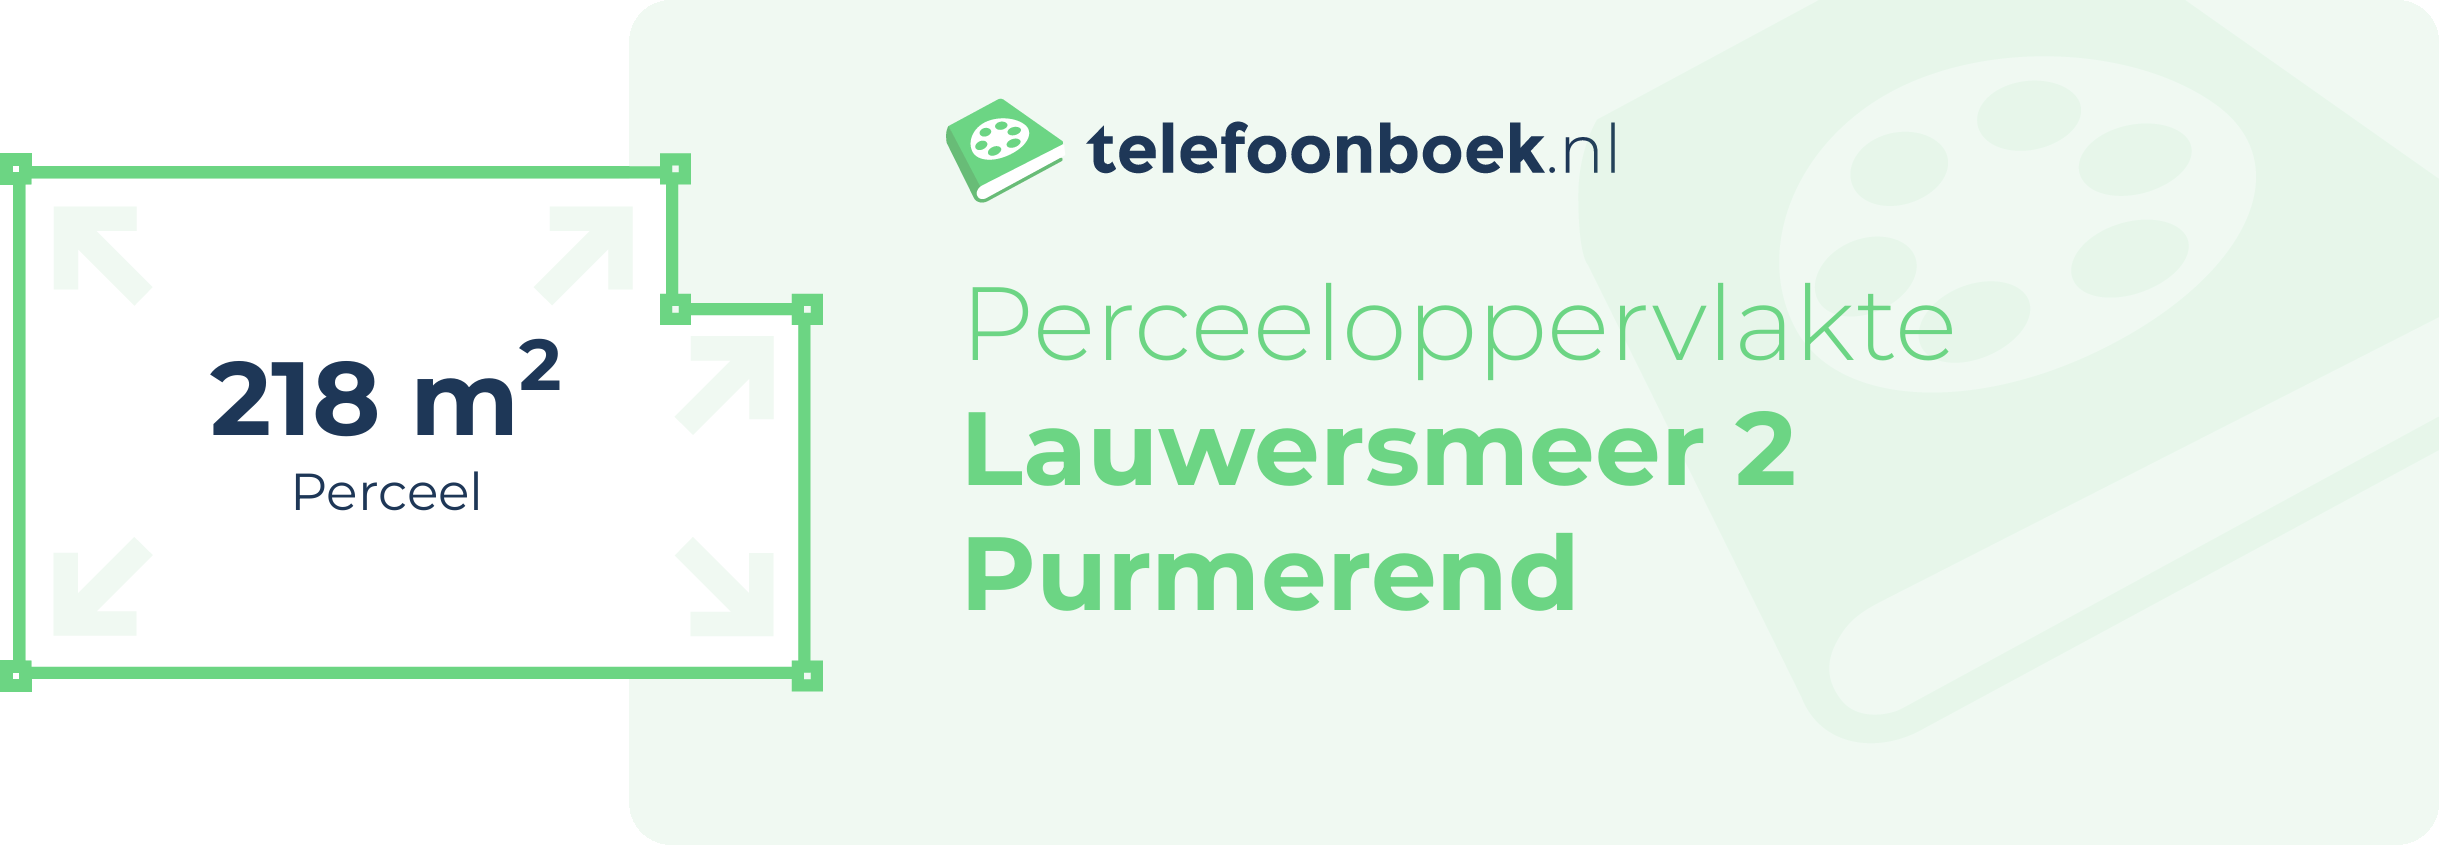 Perceeloppervlakte Lauwersmeer 2 Purmerend